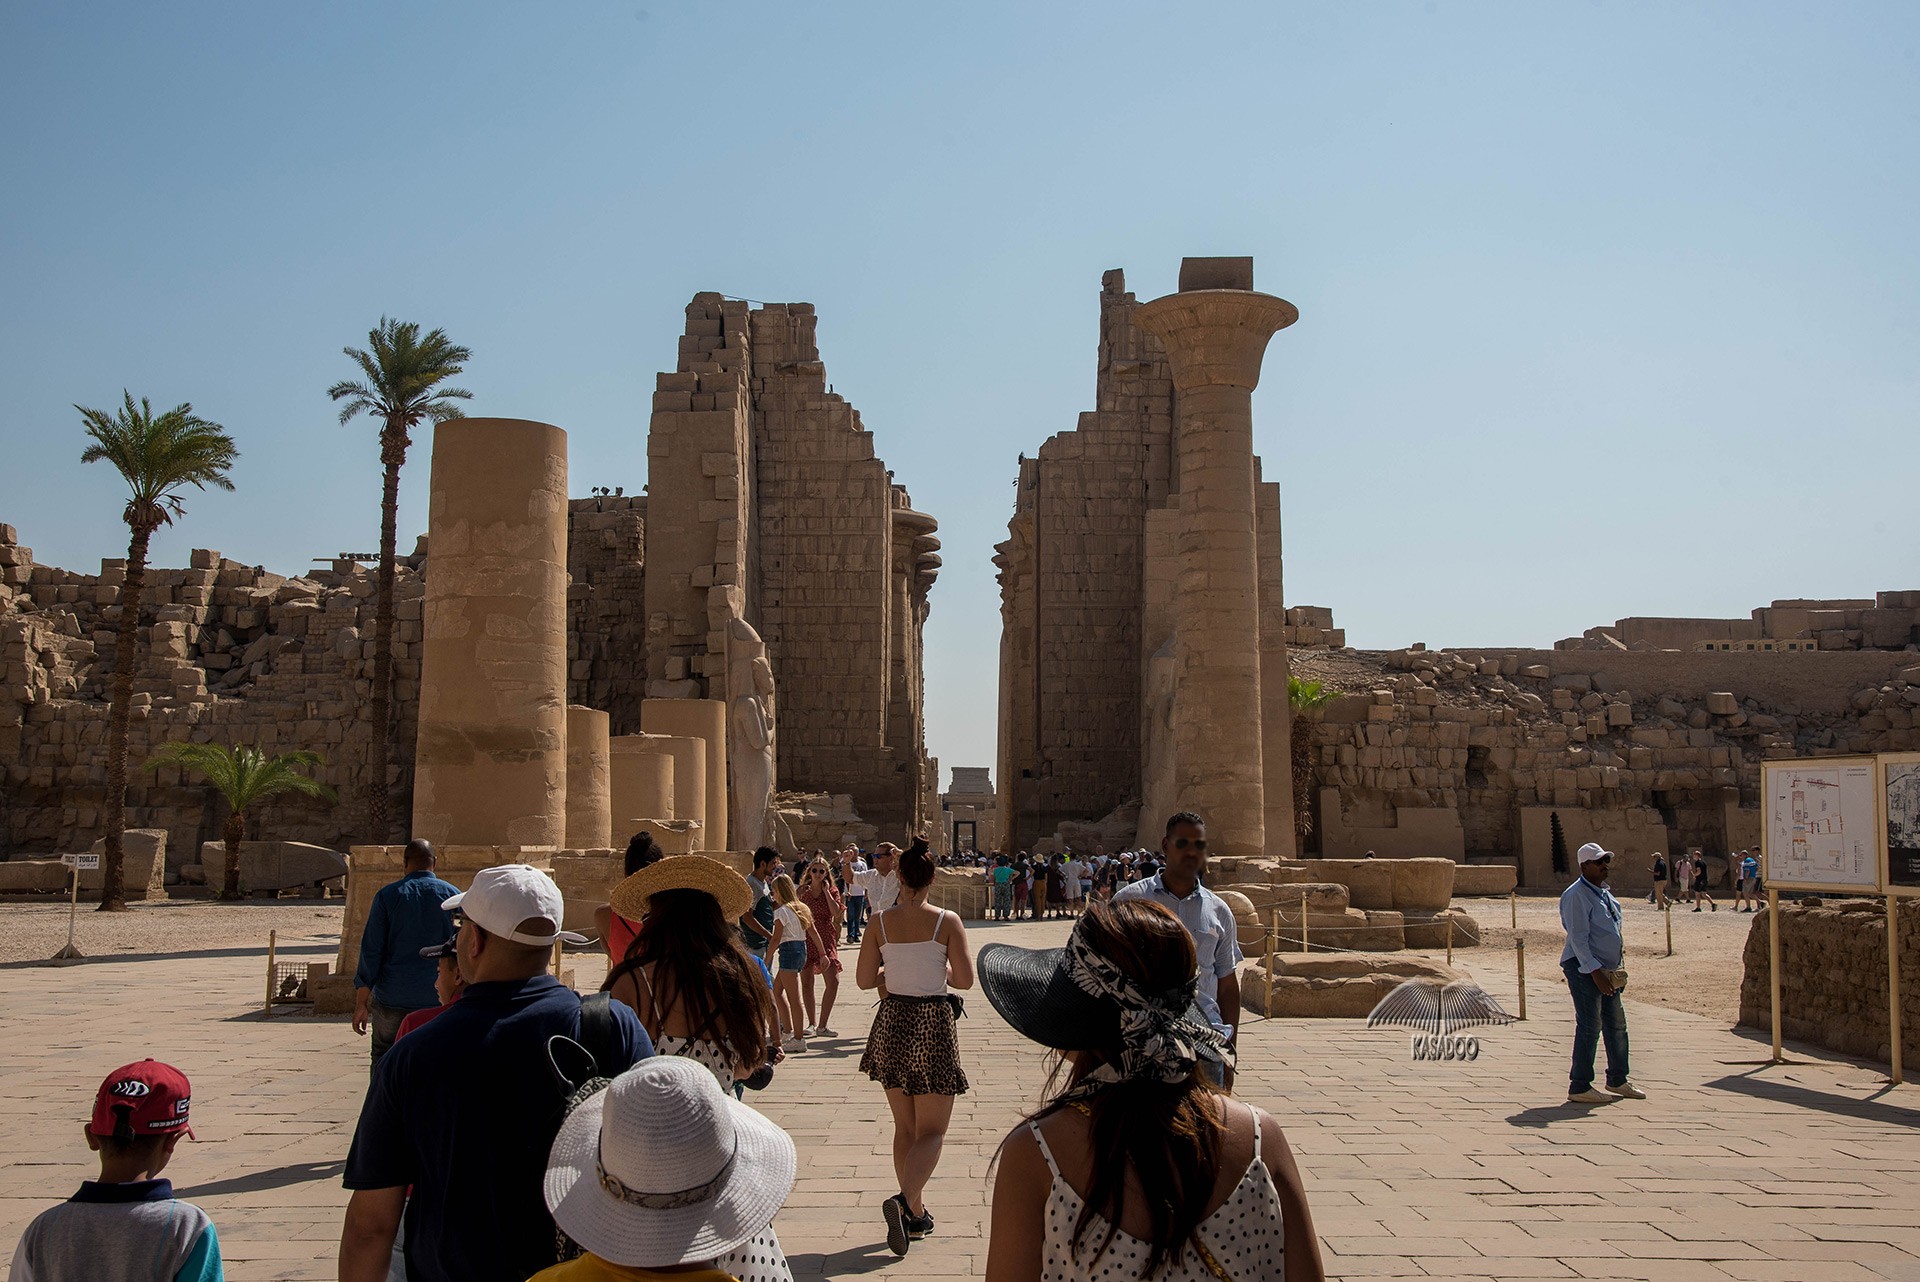 Upper Egypt - Karnak Temple